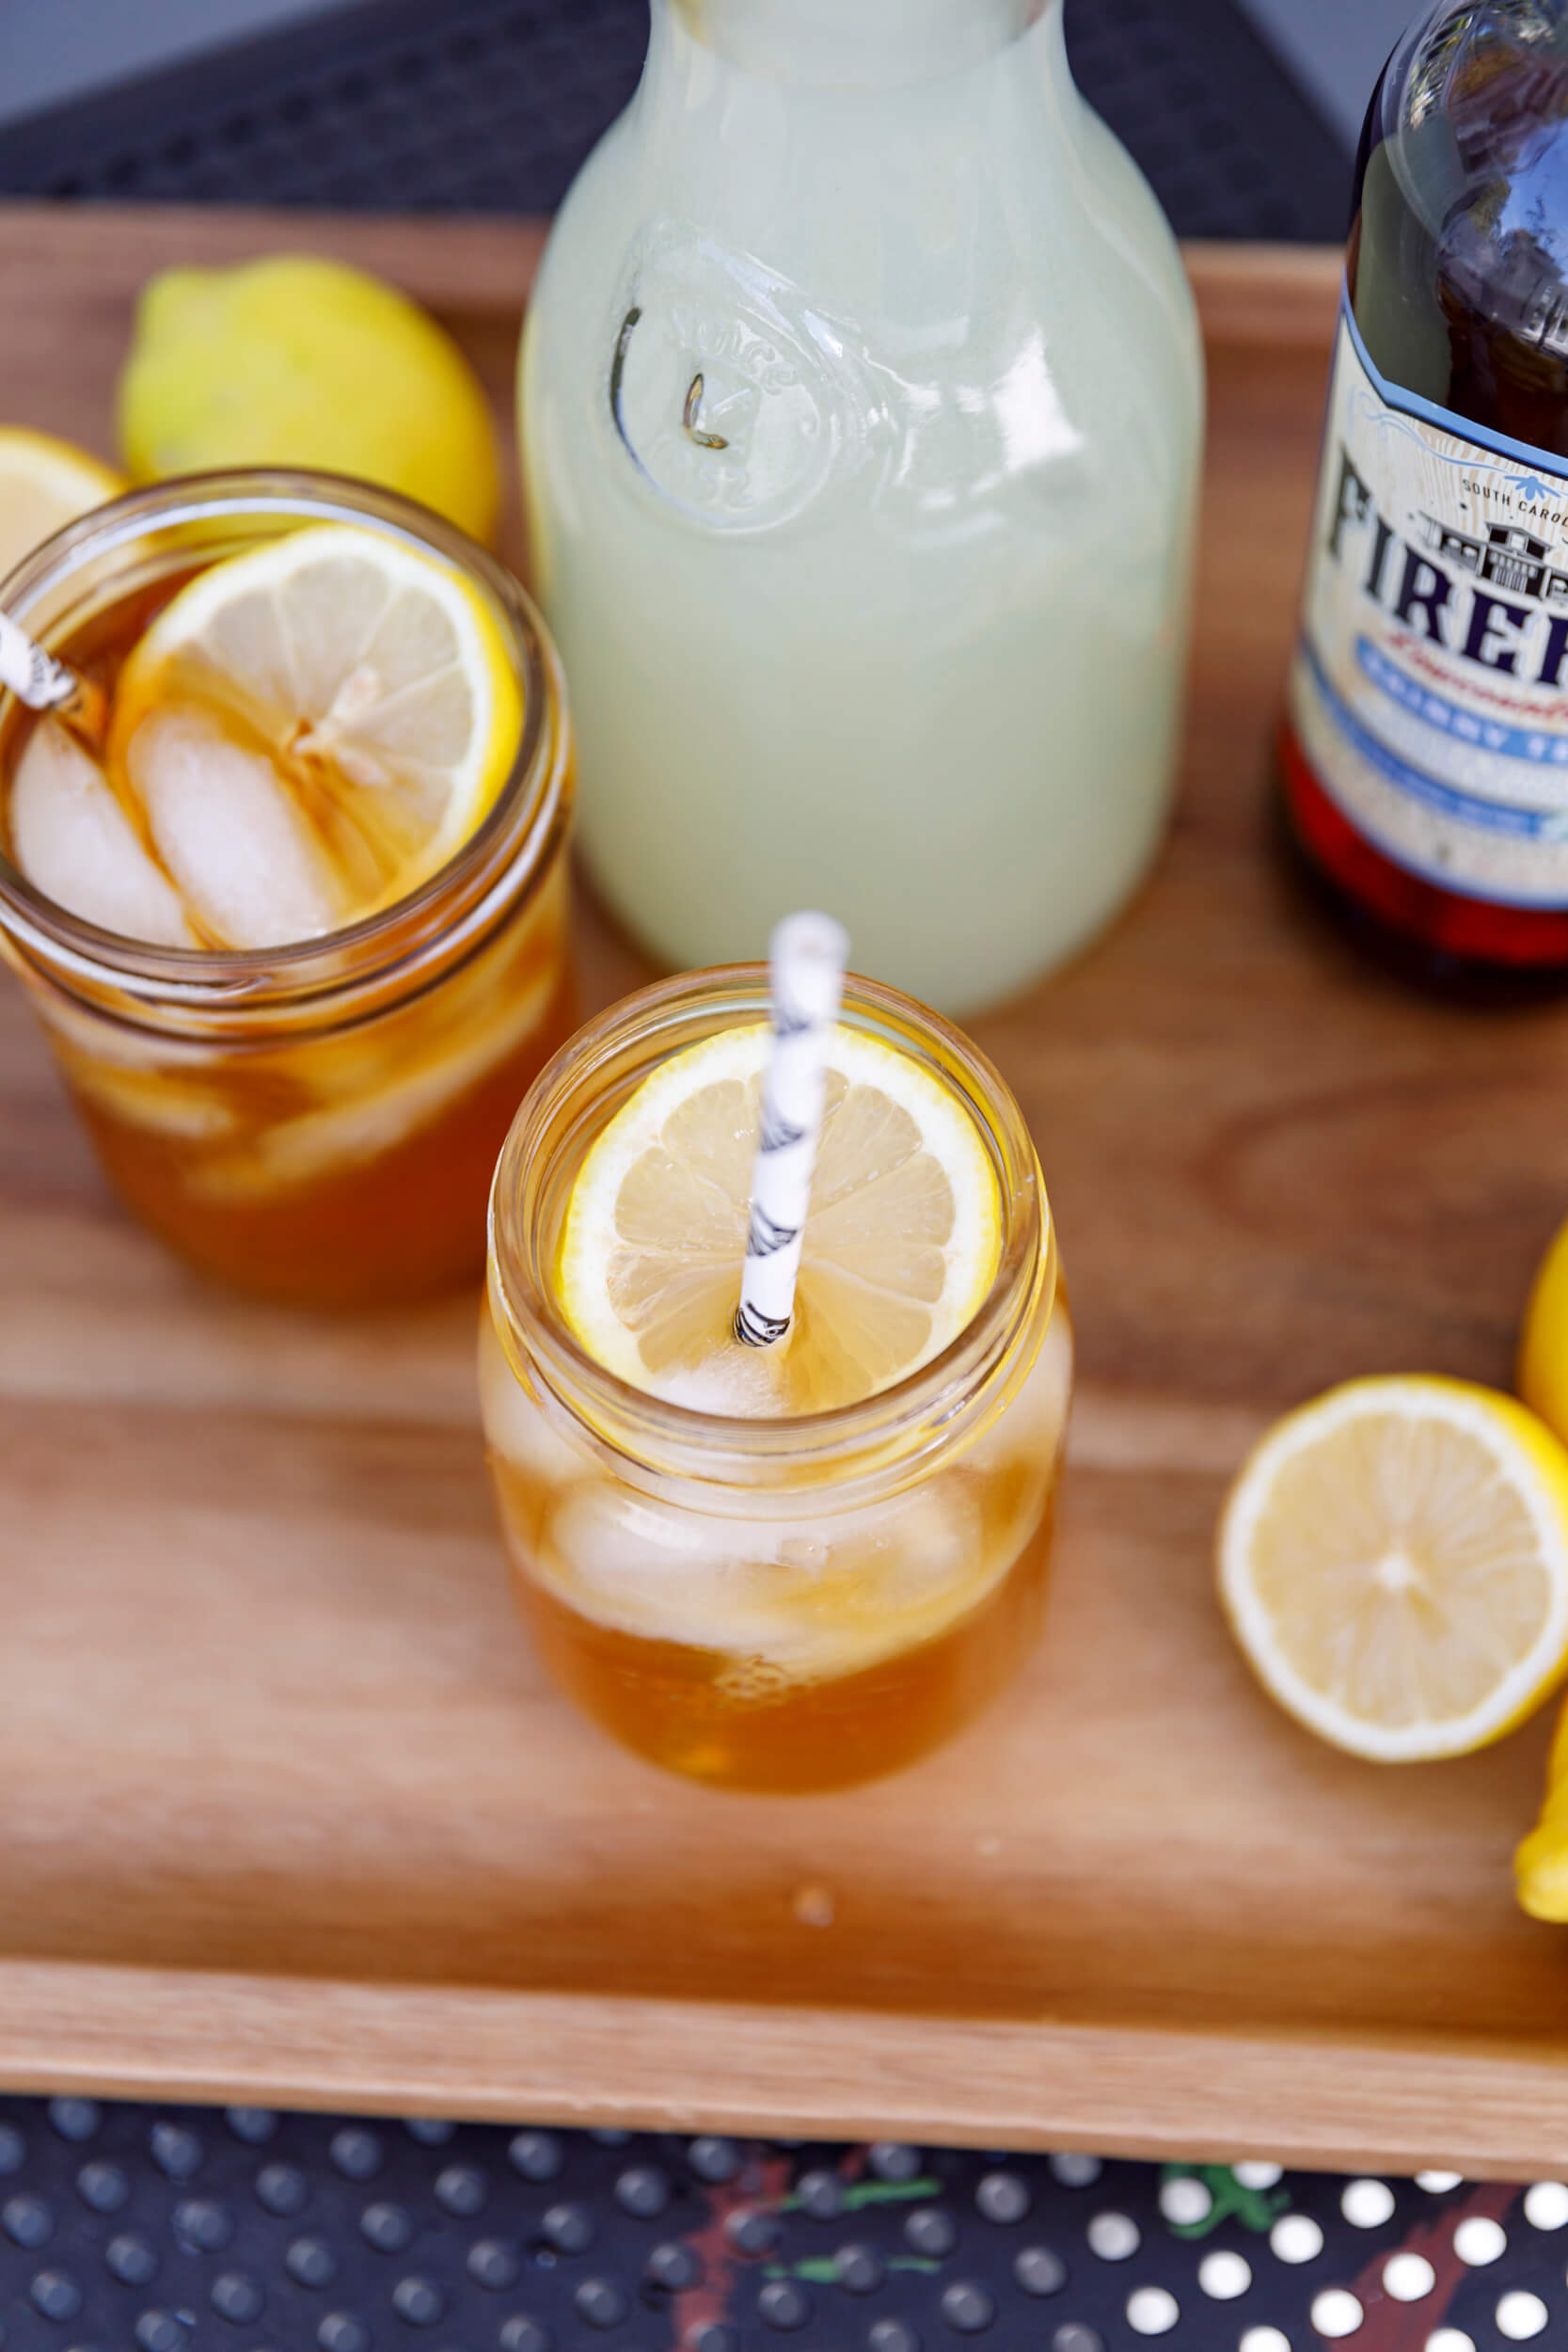 Cocktail glasses, lemonade pitcher, lemons